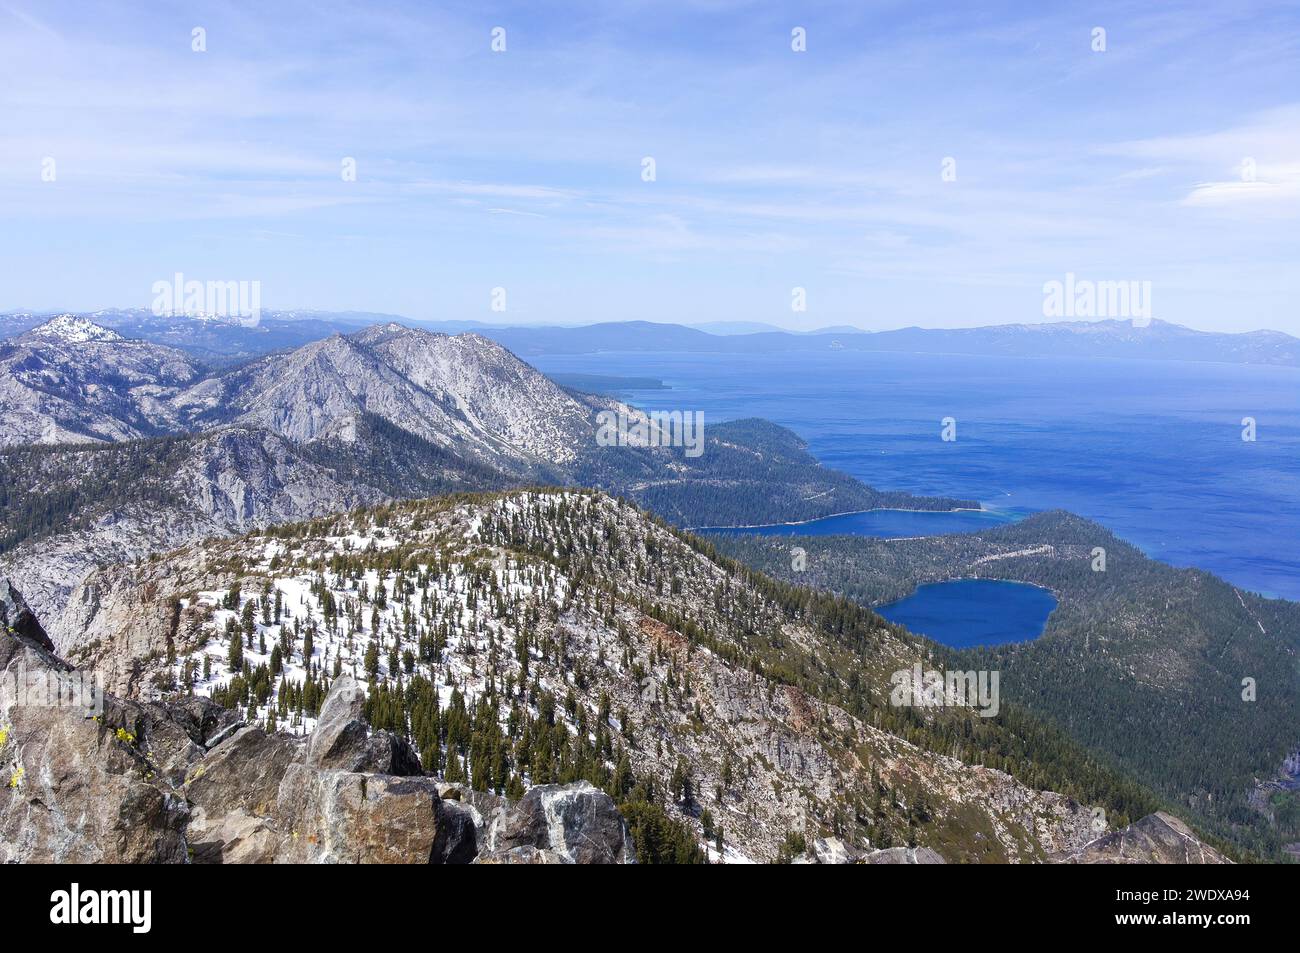 Vues sur le mont Tallac, Cascade Lake, Emerald Bay et South Lake Tahoe via Mt. Tallac Trail. South Lake Tahoe, comté d'El Dorado, Californie, États-Unis. Banque D'Images